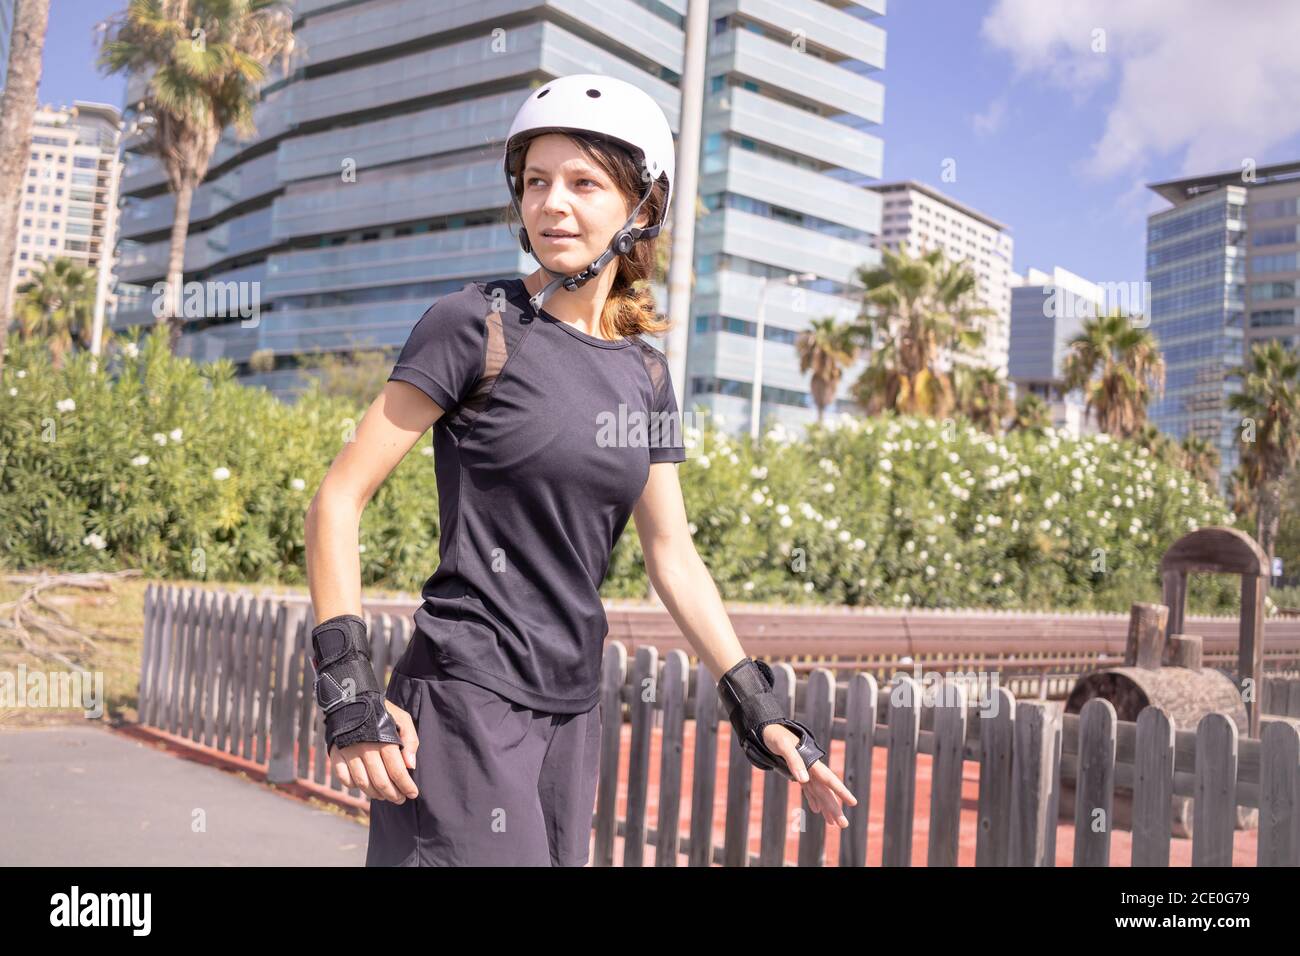 Junge Roller Skater kaukasische Frau in den weißen Helm und schwarze sportliche Kleidung, sonnigen Tag, Skatepark, städtische Umwelt. Stockfoto